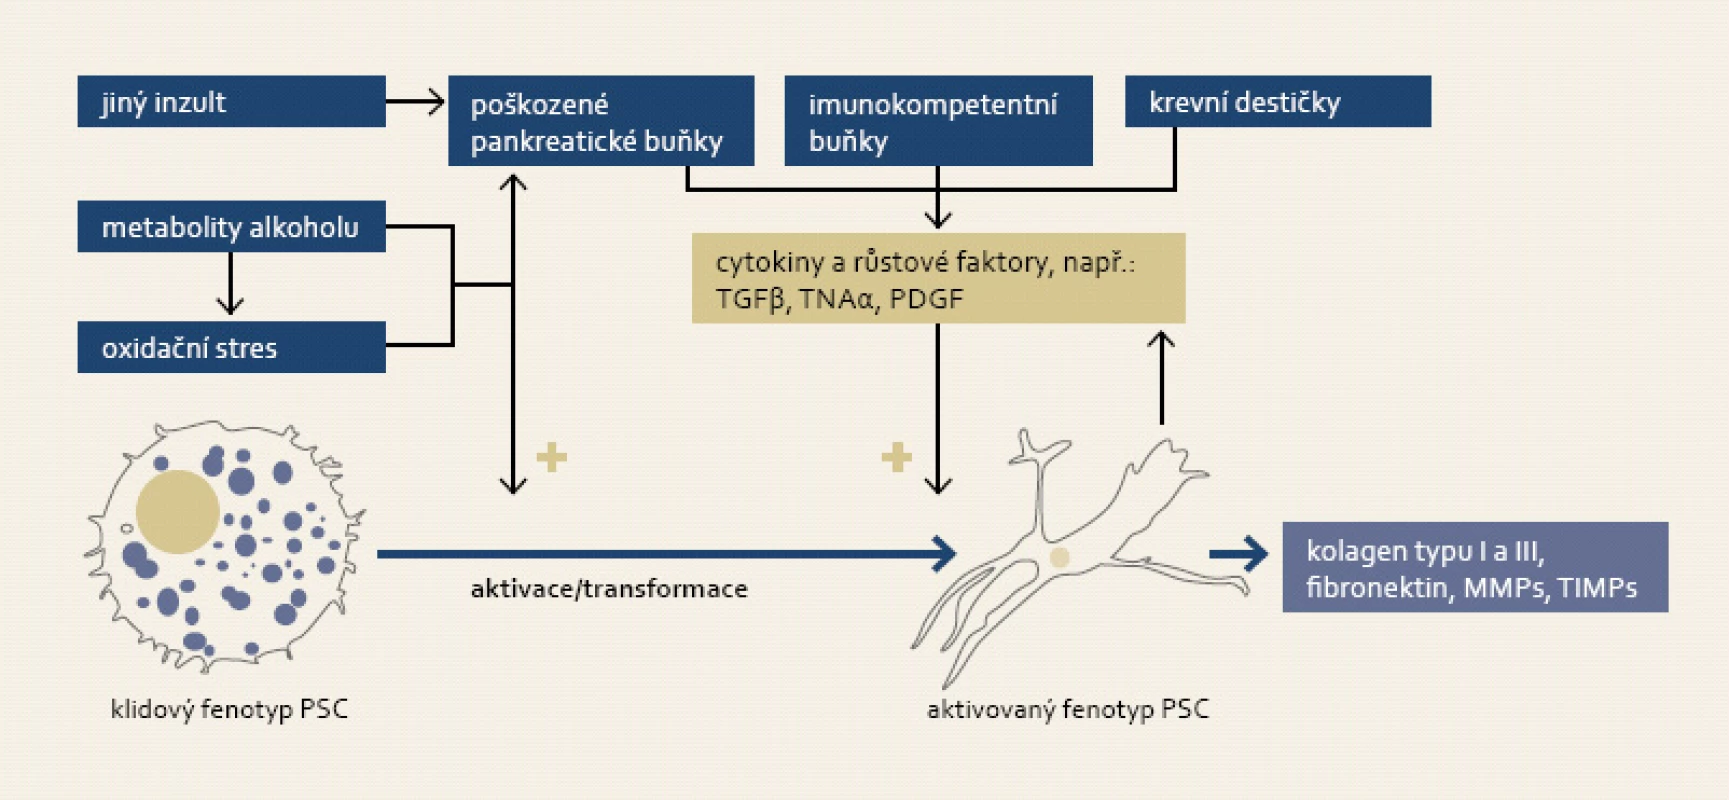 K aktivaci pankreatických stelárních buněk (PSC) dochází jak přímým vlivem metabolitů alkoholu a jimi indukovaným oxidačním stresem, tak i působením cytokinů a růstových faktorů emitovanými imunokompetentními buňkami a stromálními buňkami pankreatu při zánětu. Proces aktivace je morfologicky charakteristický změnou tvaru buňky a ztrátou tukových kapének.
Fig. 4. Activation of pancreatic stellate cells (PSC) is triggered either by alcohol metabolites and subsequent oxidative stress, or by action of cytokines and growth factors secreted by immunocompetent and stromal pancreatic cells accompanying inflammation. Activation of PSC is accompanied by its morphological change and loss of fat droplets.